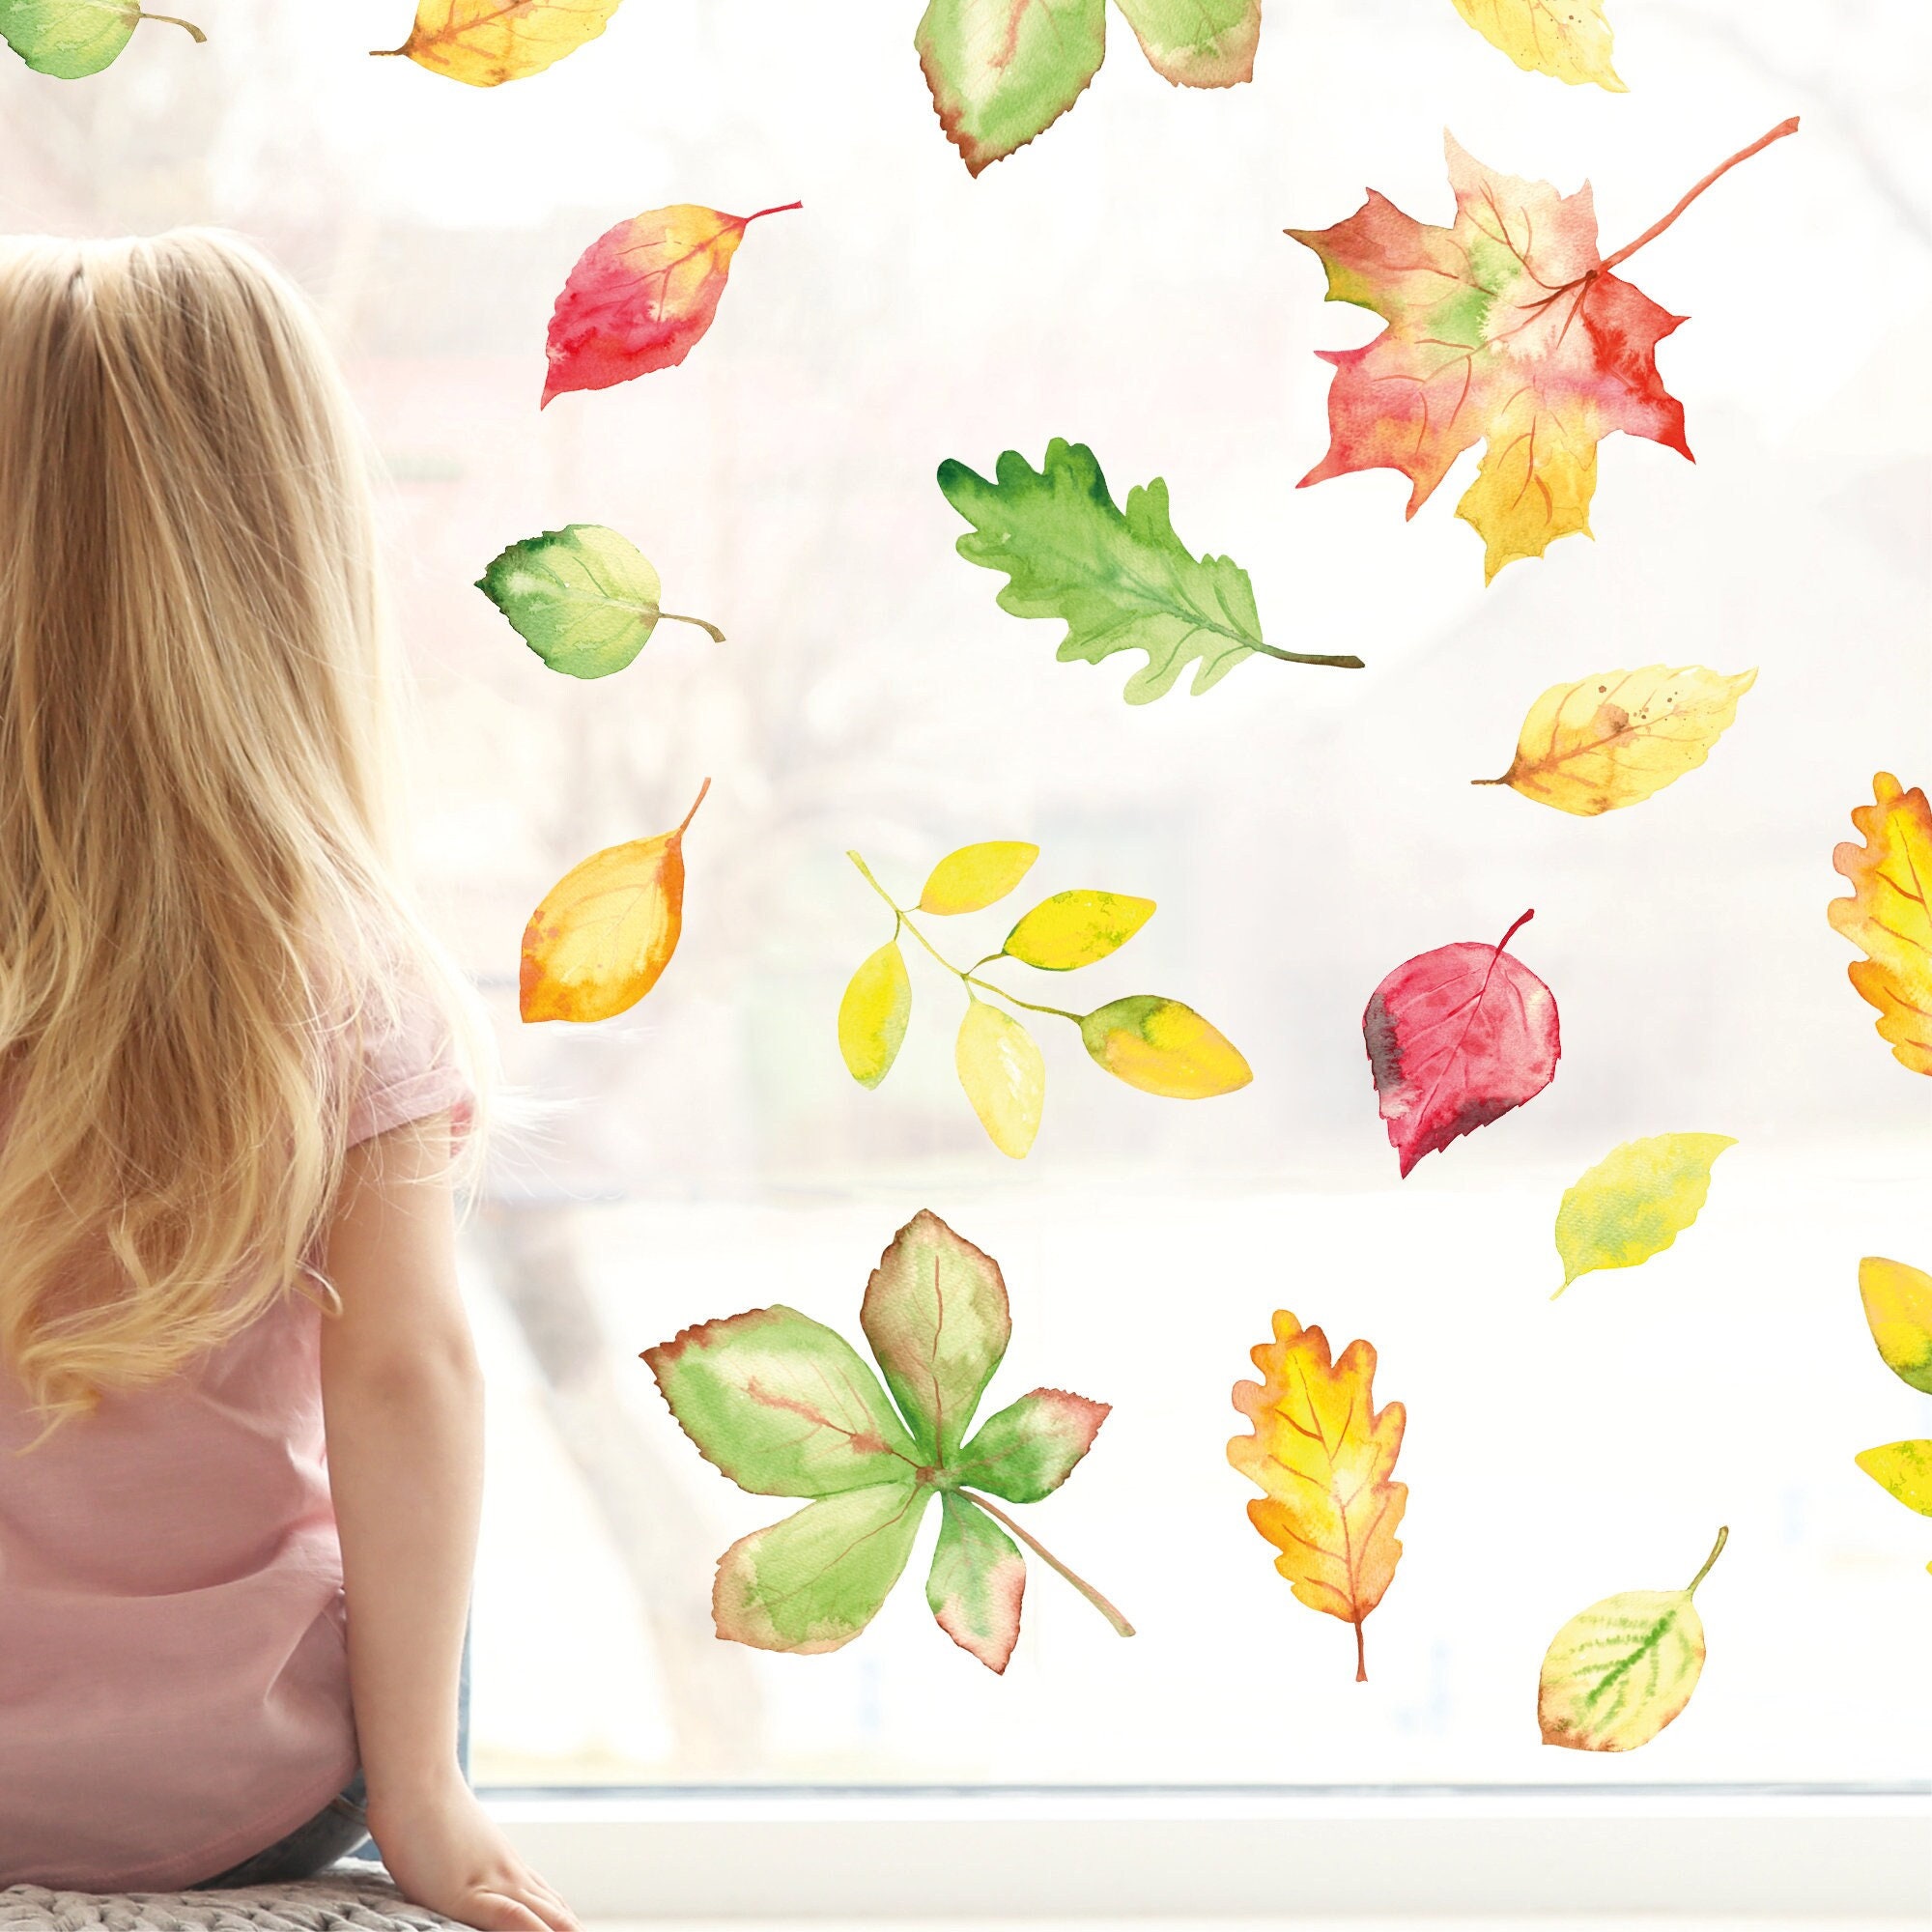 Fensterbild Herbst Blätter Herbstblätter bunt farbig wiederverwendbare Fensteraufkleber Kinderzimmer Baby Kind